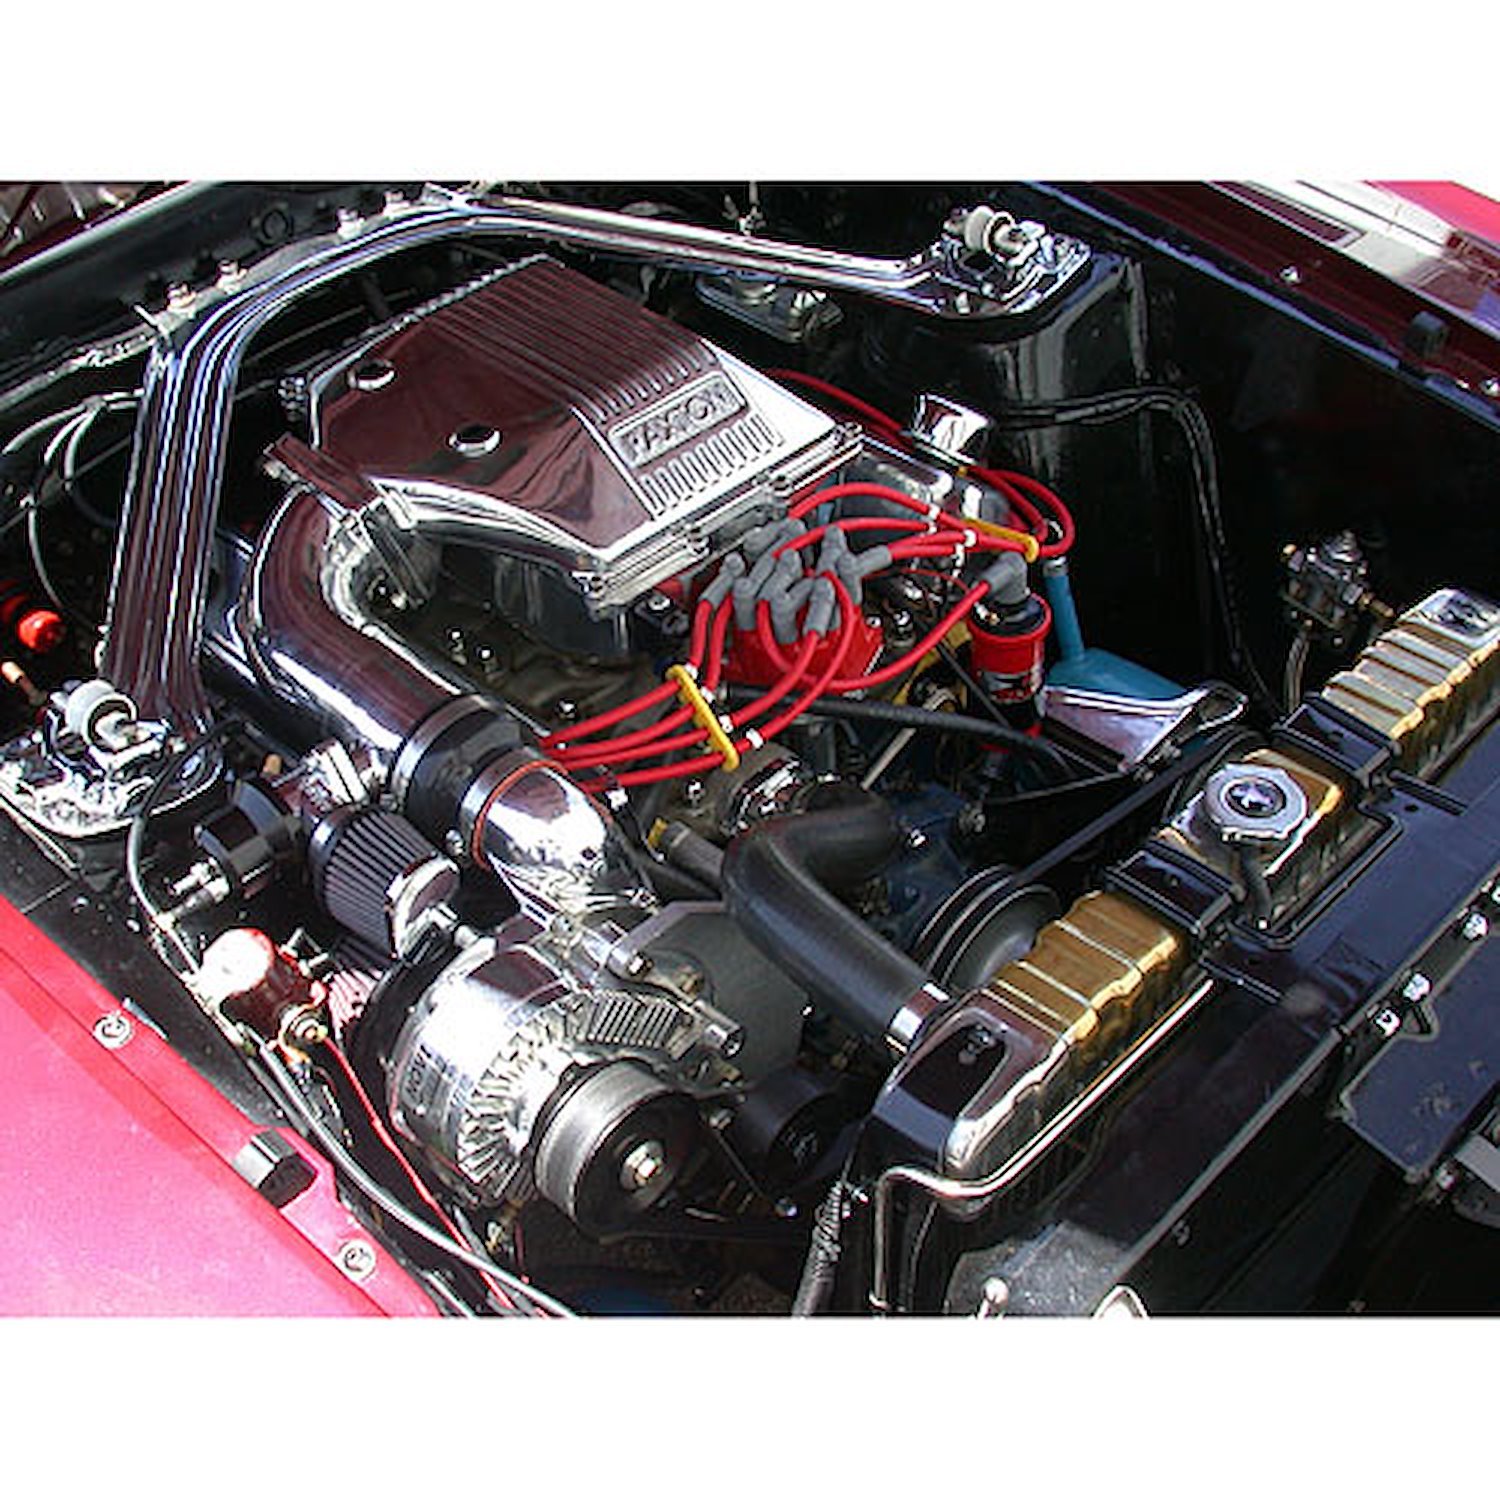 NOVI 1200 Supercharger System 1969 Mustang (Passenger Side